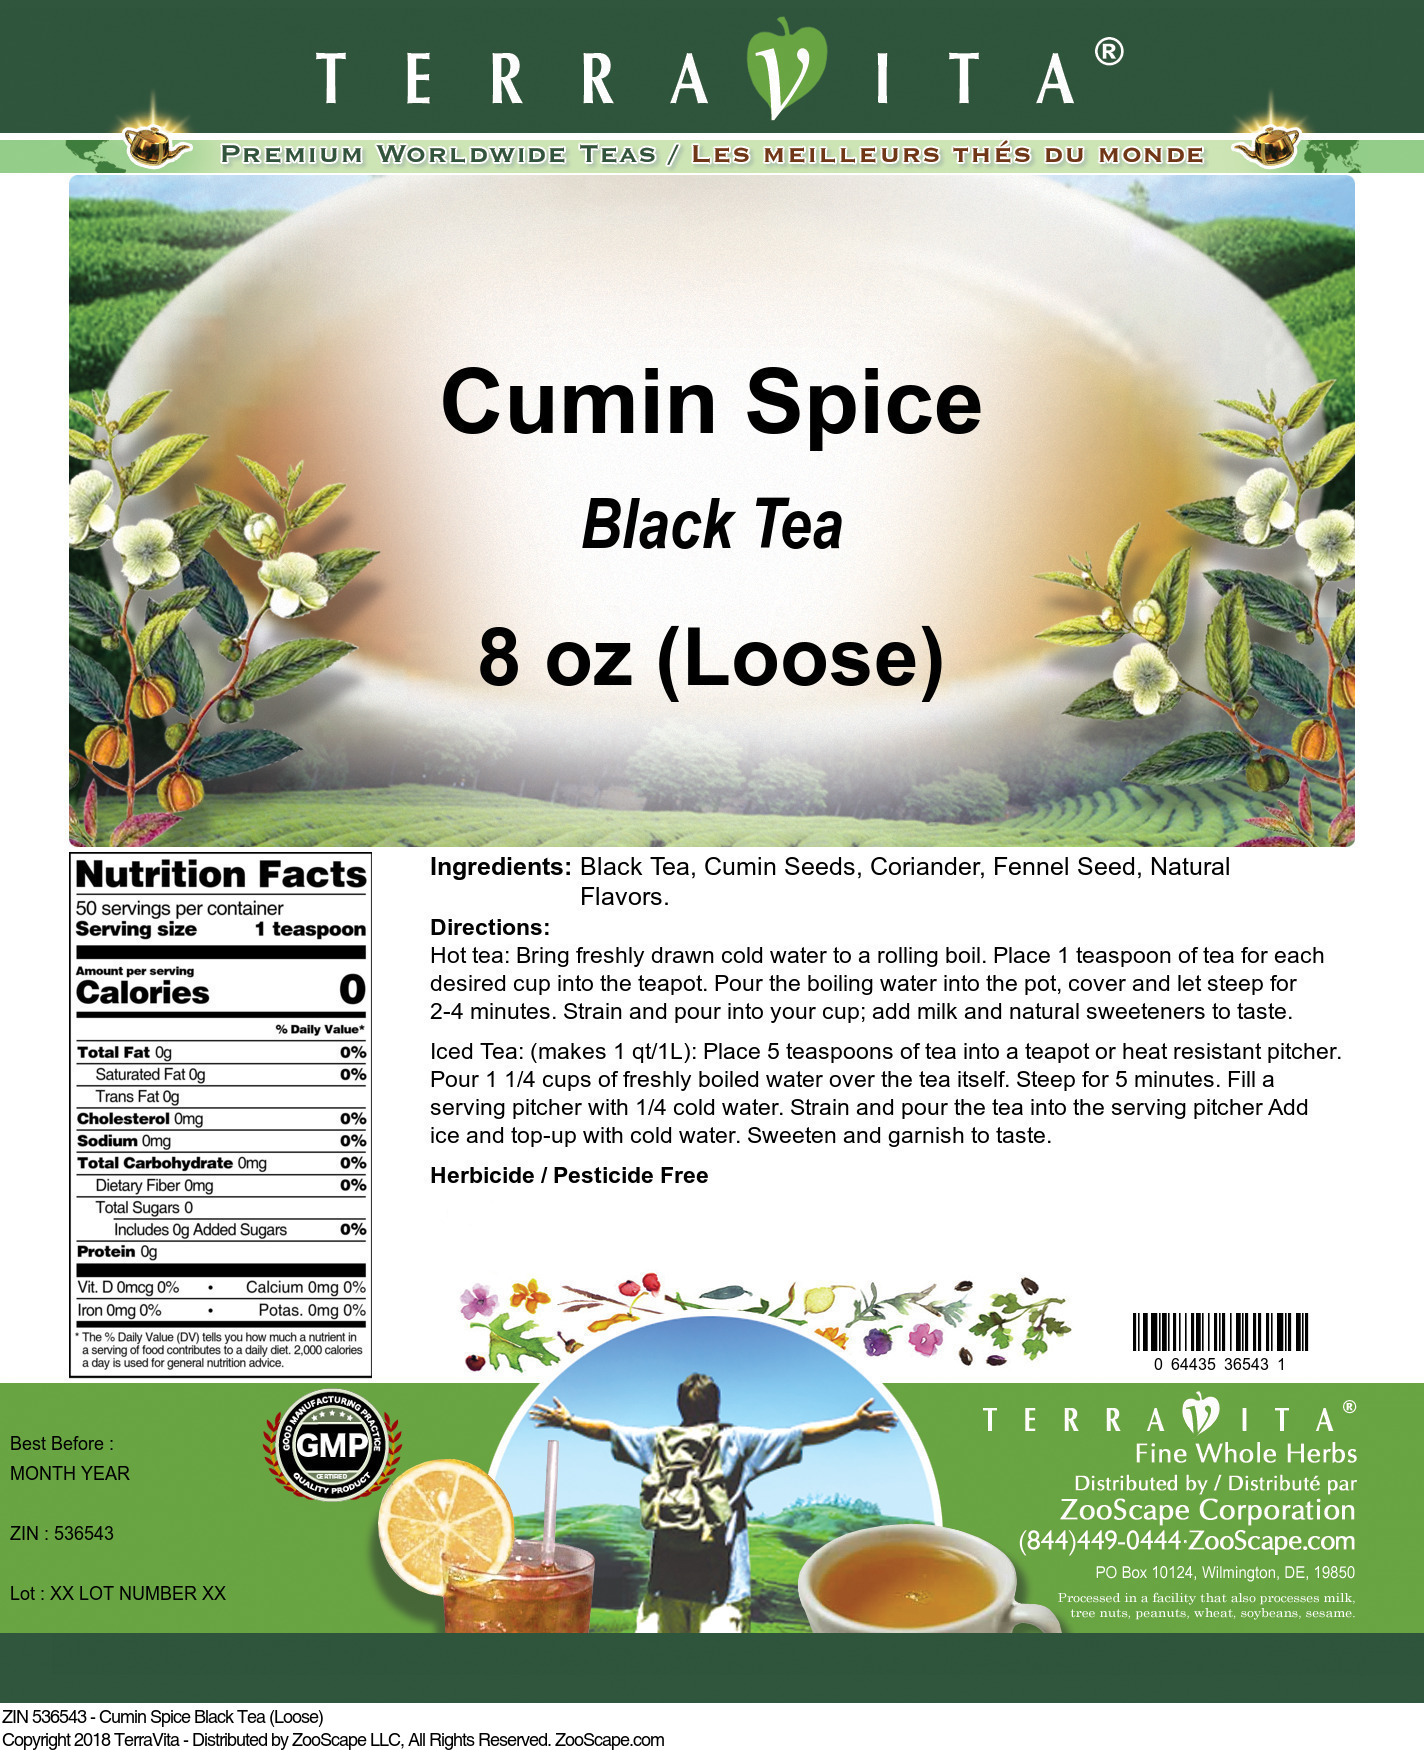 Cumin Spice Black Tea (Loose) - Label